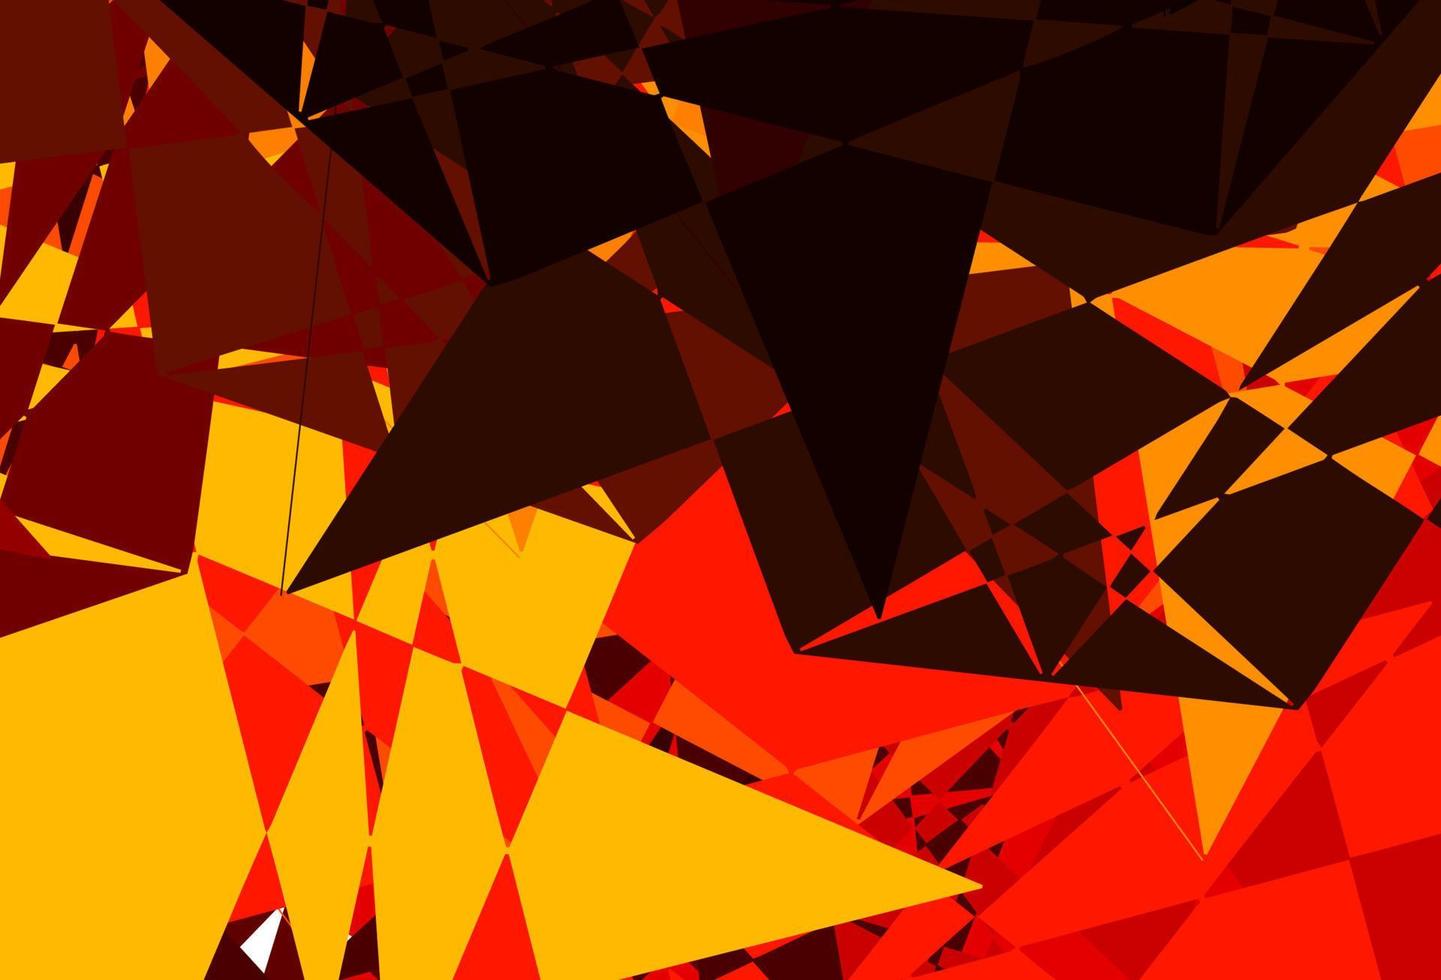 sfondo vettoriale arancione scuro con forme poligonali.